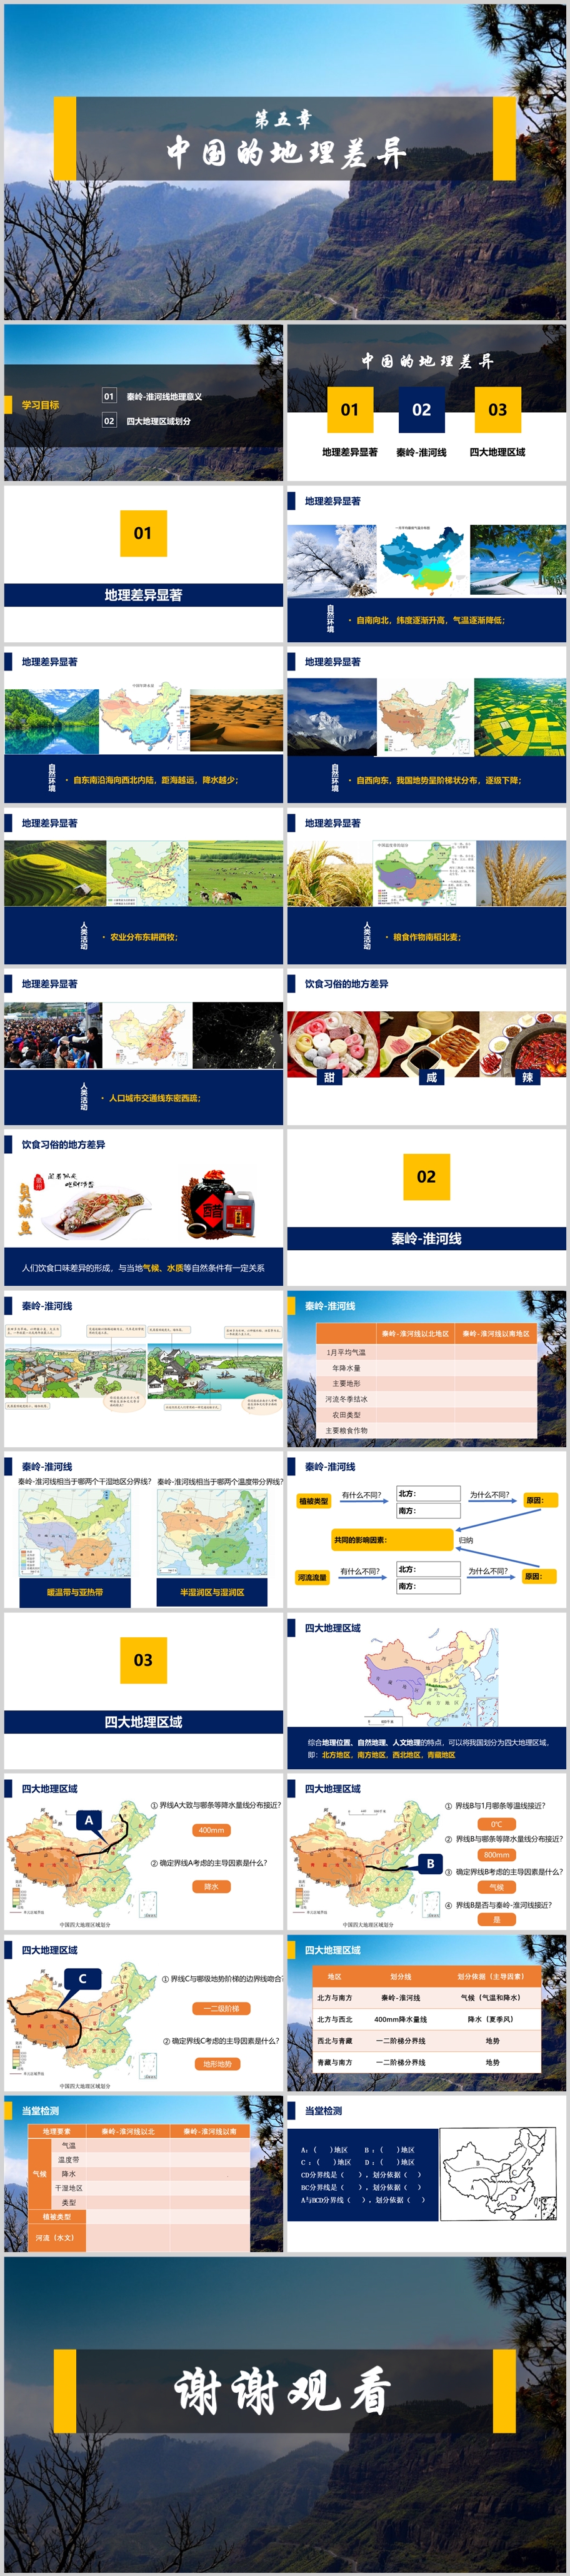 第五章 中国地理差异组图.jpg